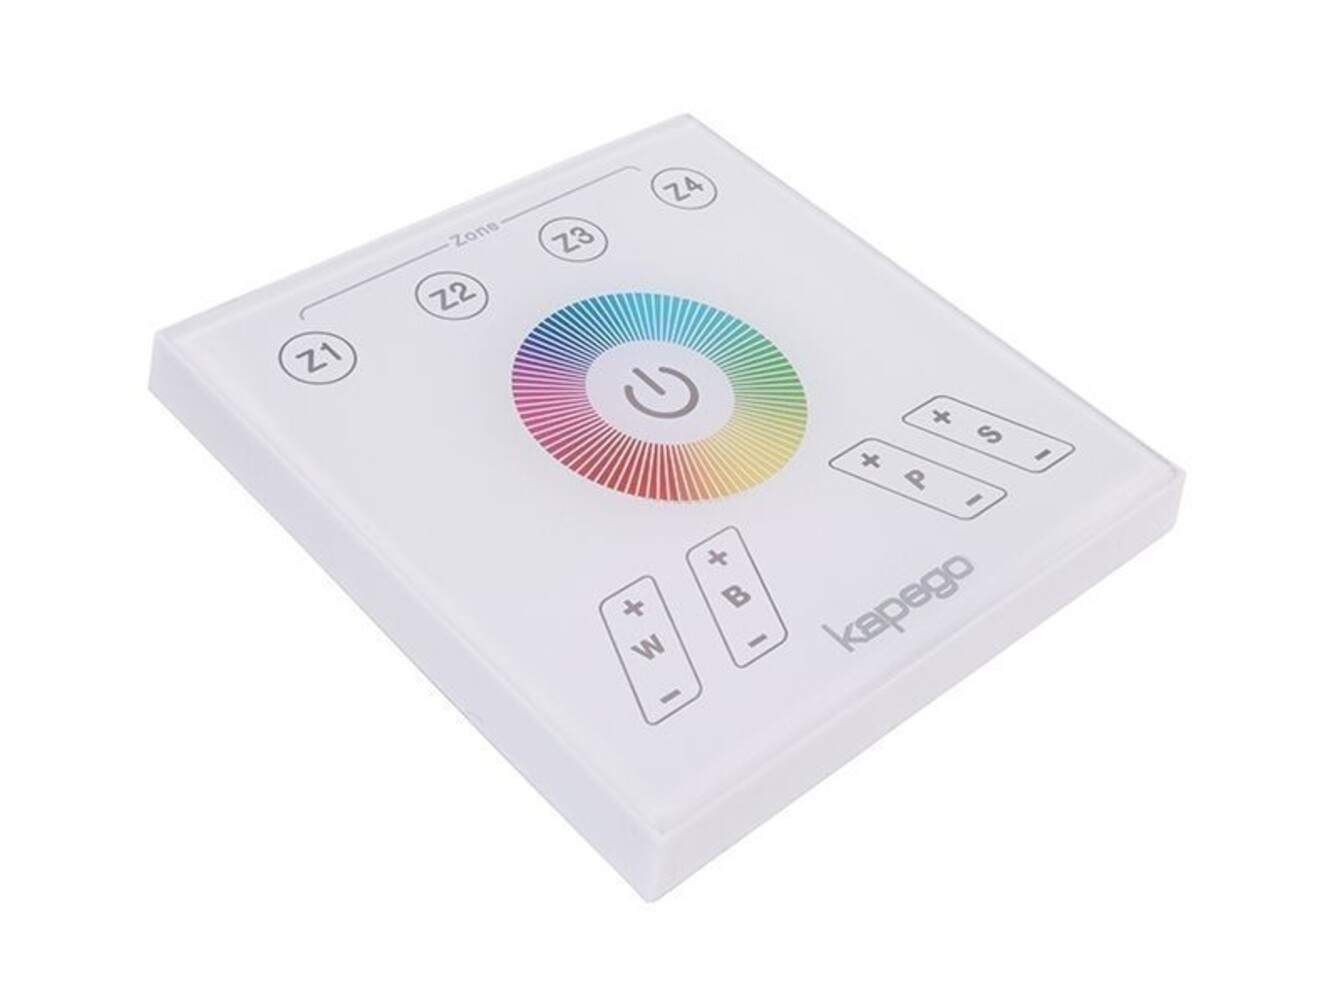 Deko-Light Controller mit eleganter Touchpanel-Oberfläche in Weiß, für optimale Farbsteuerung in einer Spannung von 220-240V